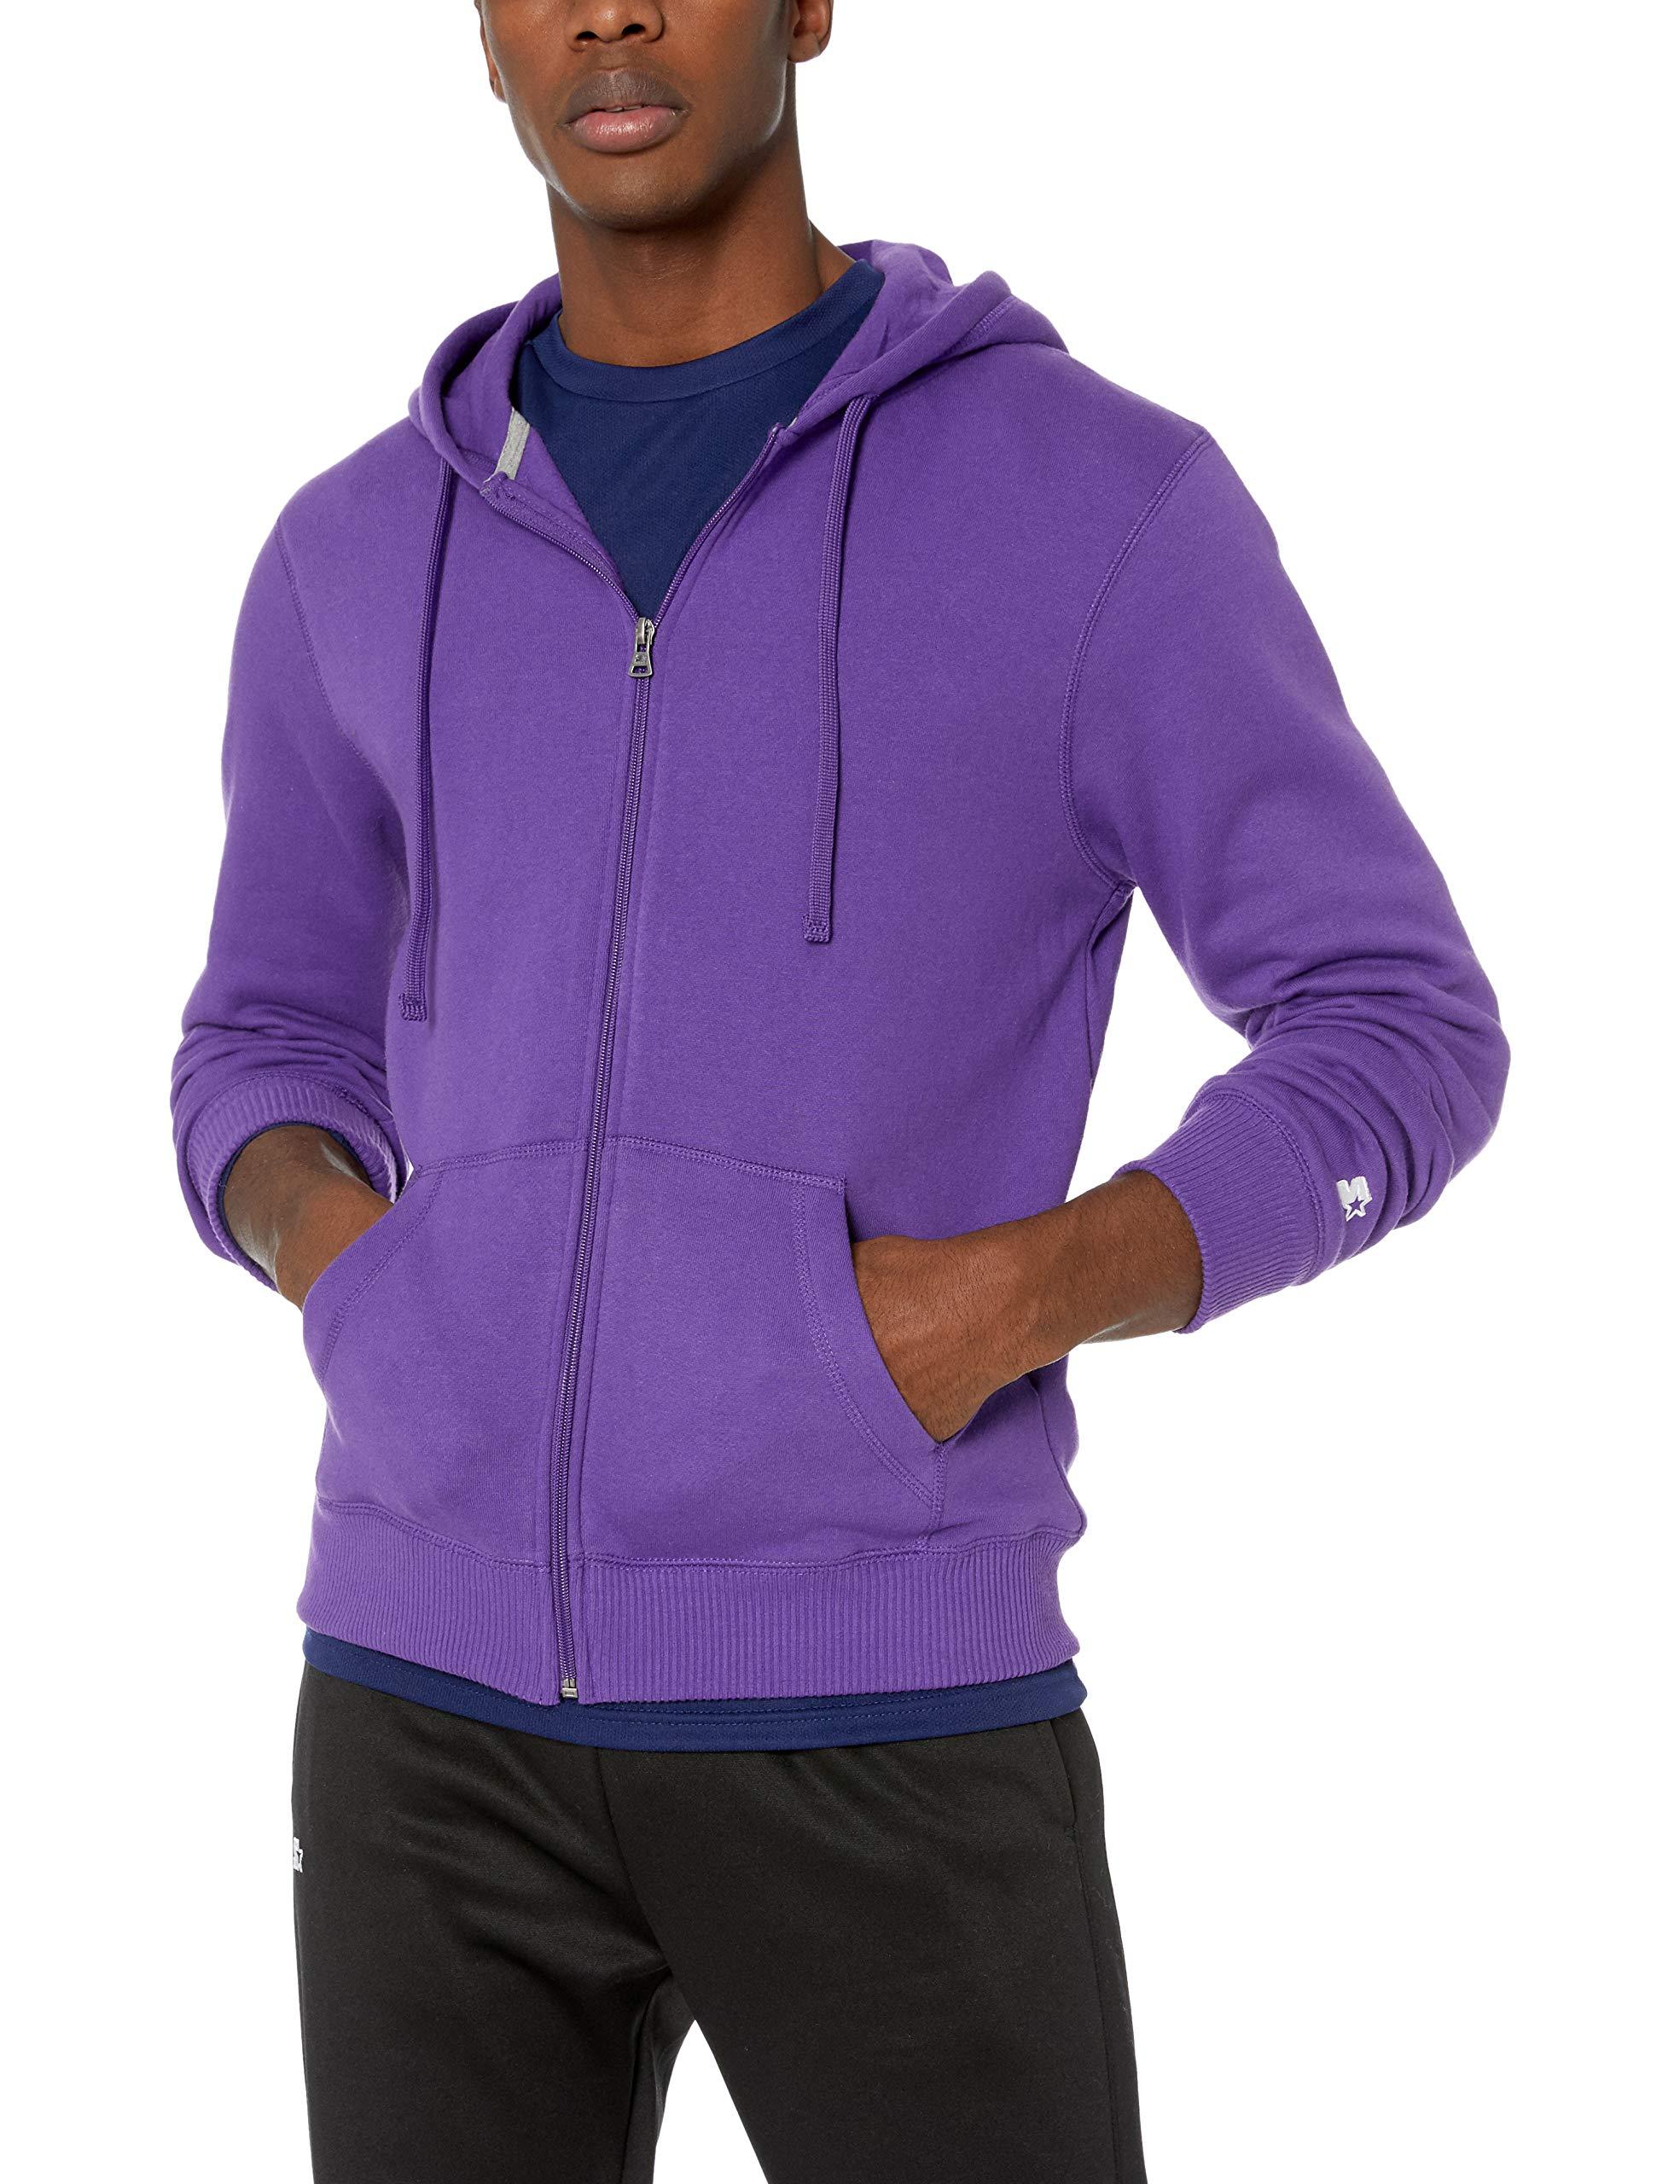 Starter Fleece Zip-up Hoodie in Purple for Men - Lyst